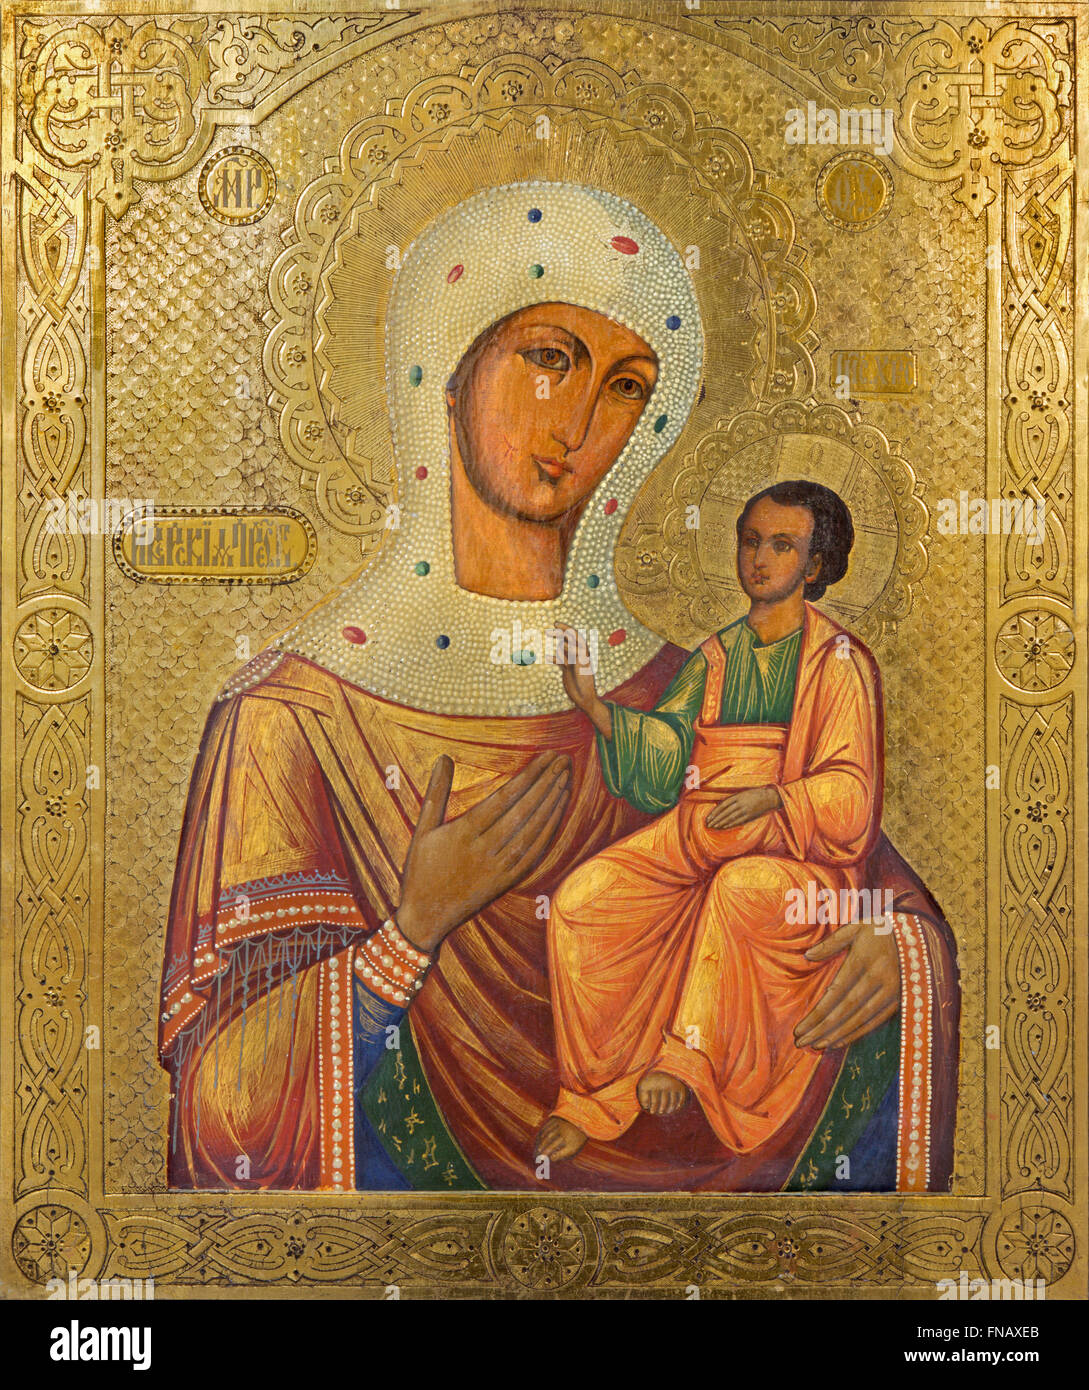 Betlemme, Israele - 6 Marzo 2015: l'icona della Madonna nella chiesa siro-ortodossa di artista sconosciuto del 19. cento. Foto Stock